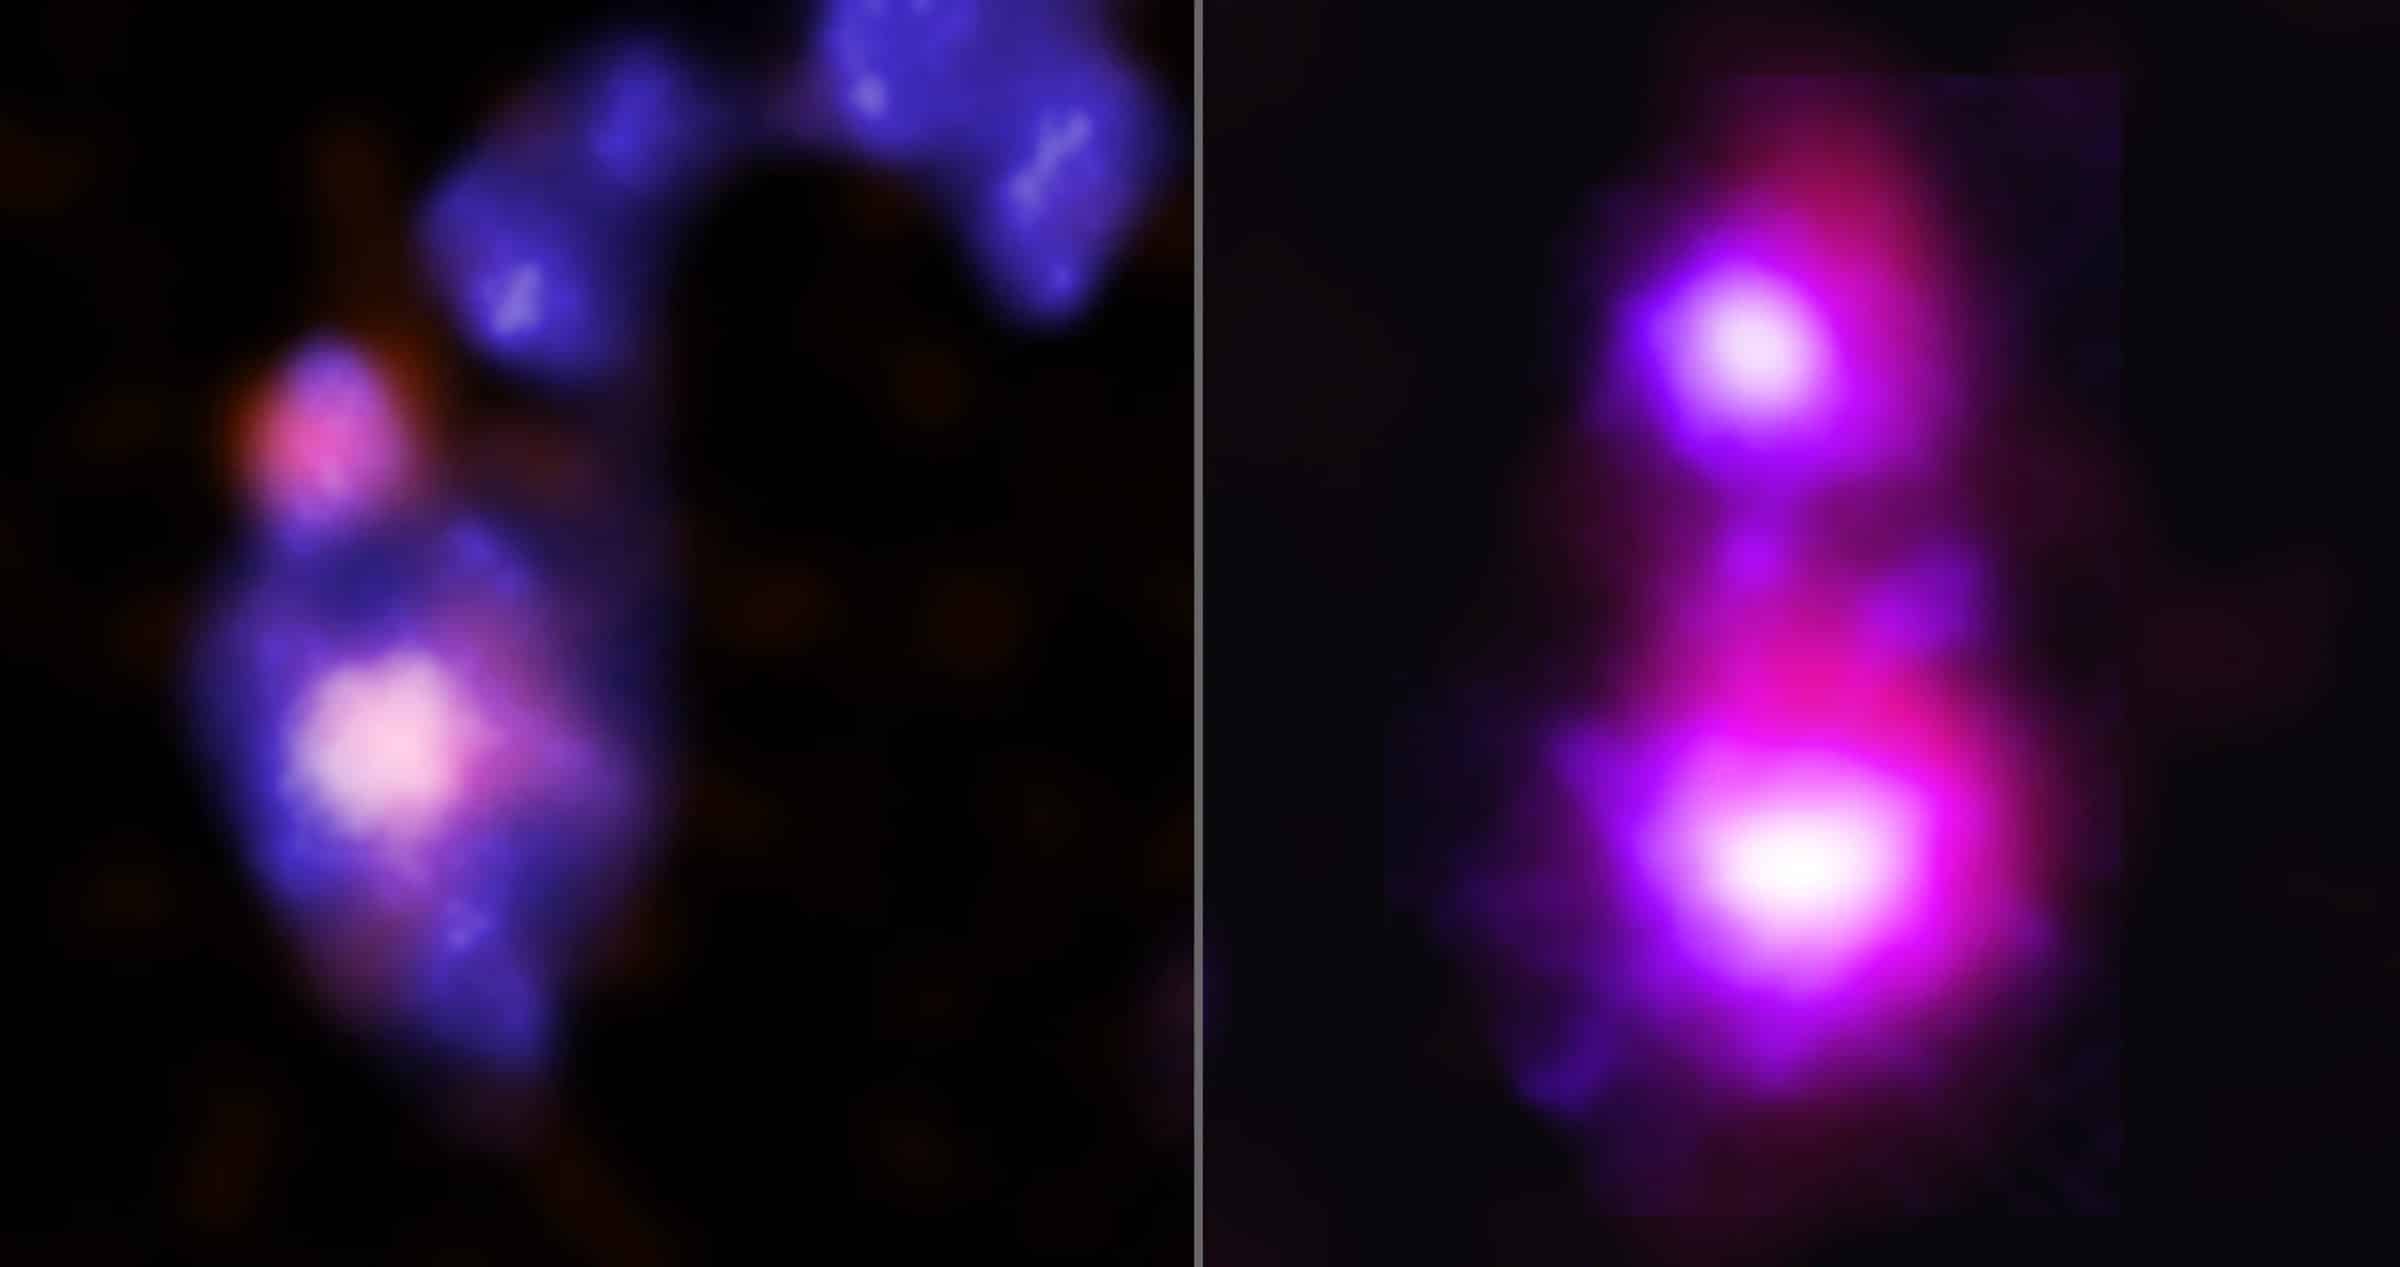 collision paires trous noirs Chandra Mirabilis Elstir Vinteuil